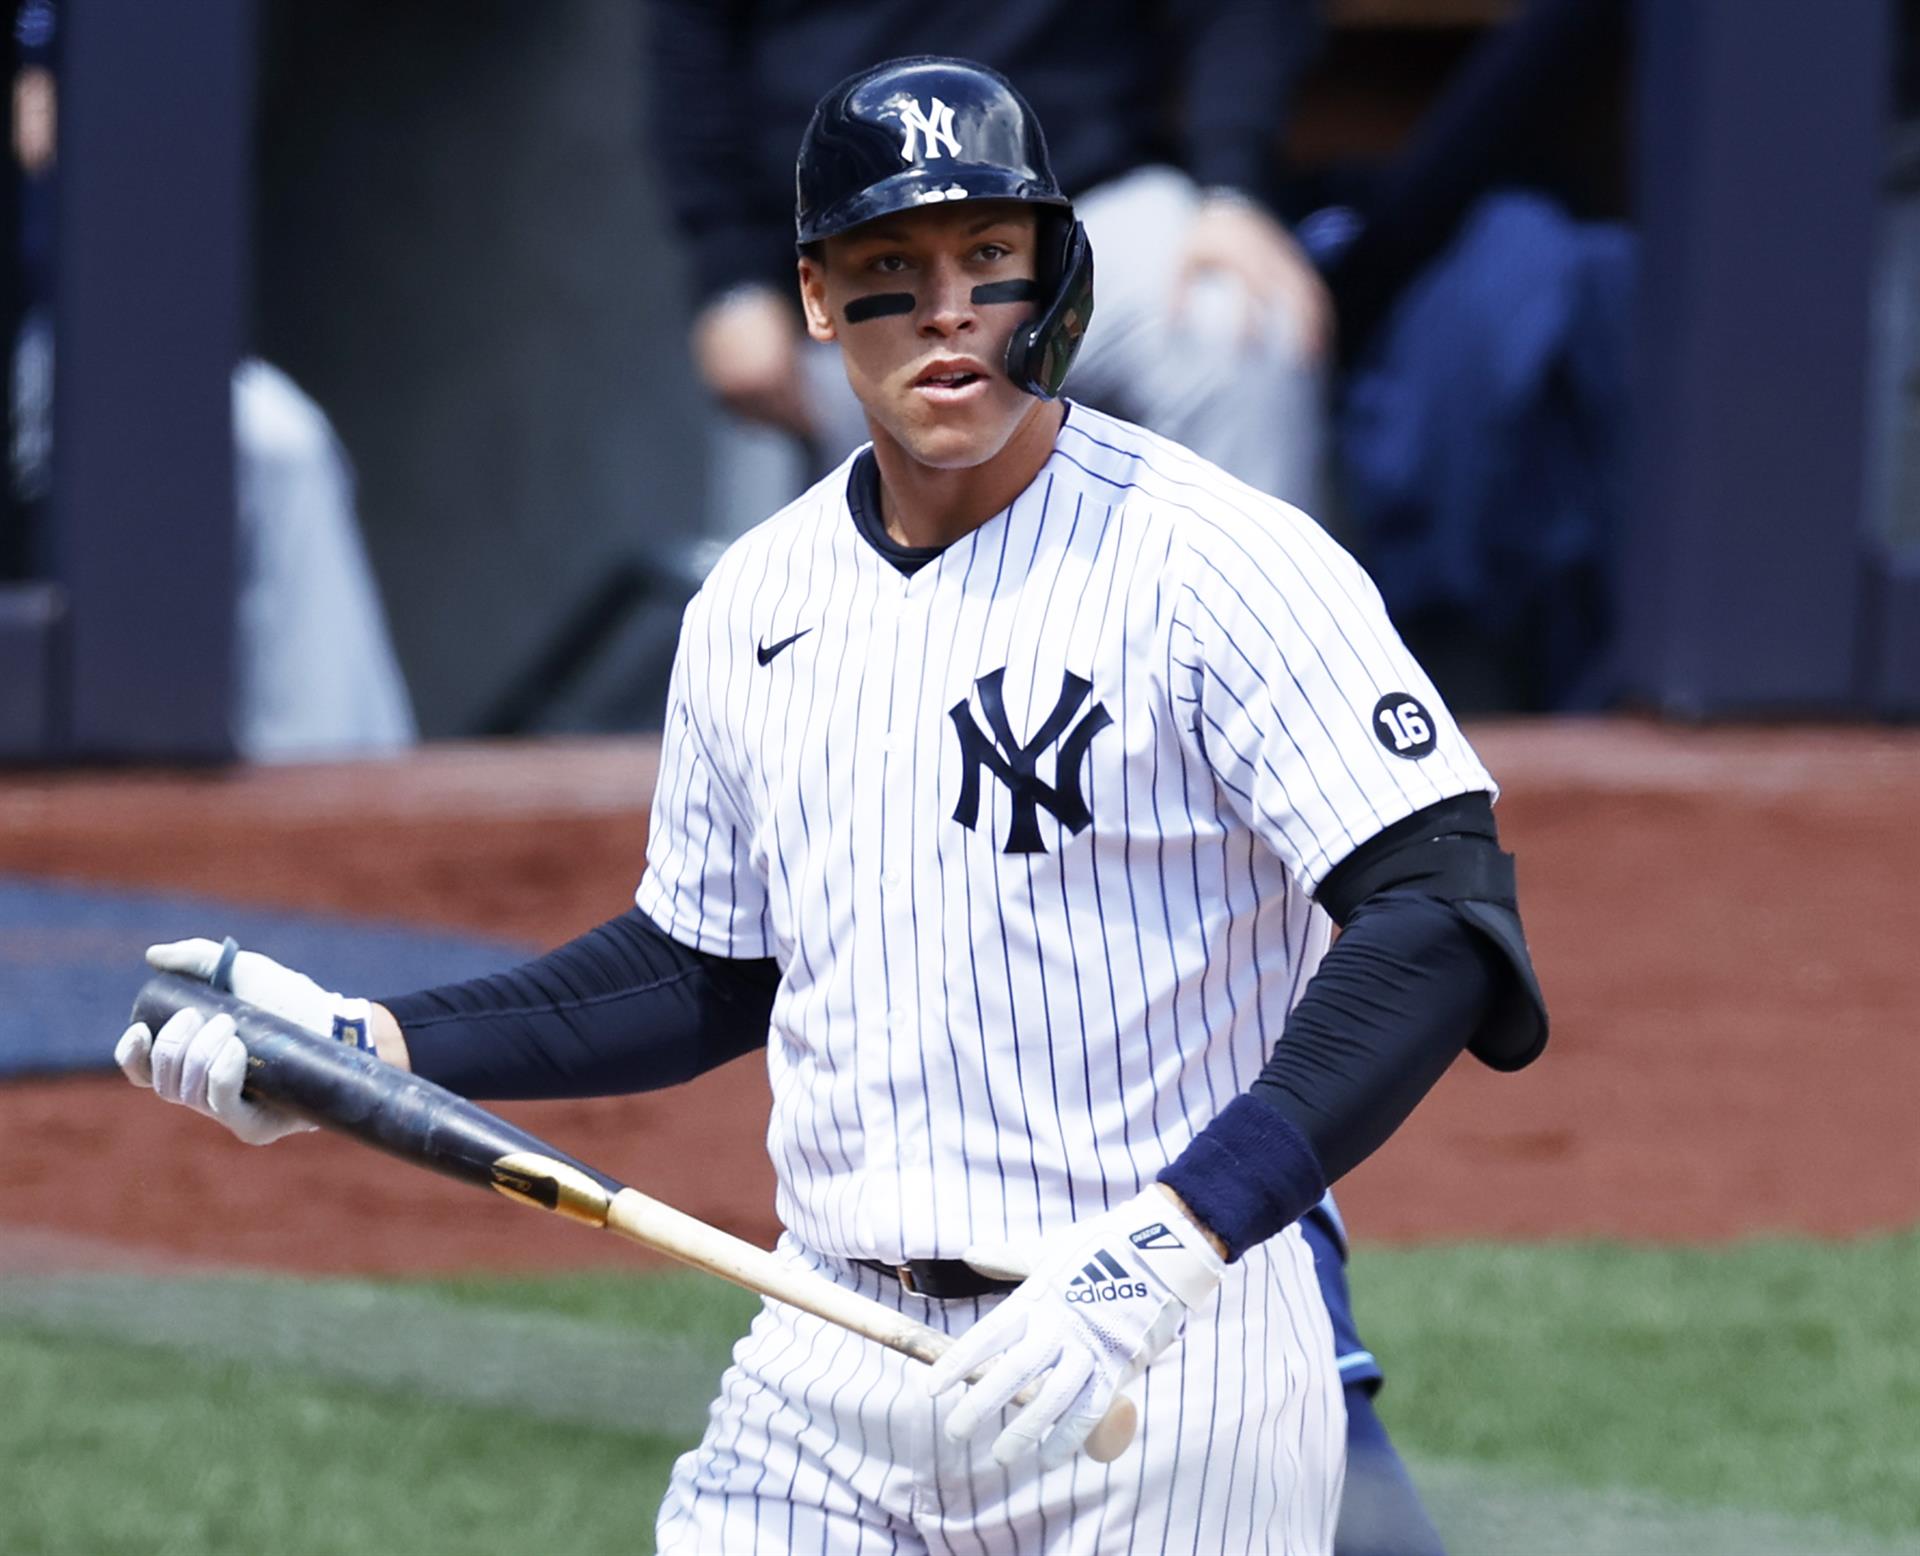 El jugador de los New York Yankees Aaron Judge, en una fotografía de archivo.EFE/EPA/Jason Szenes
